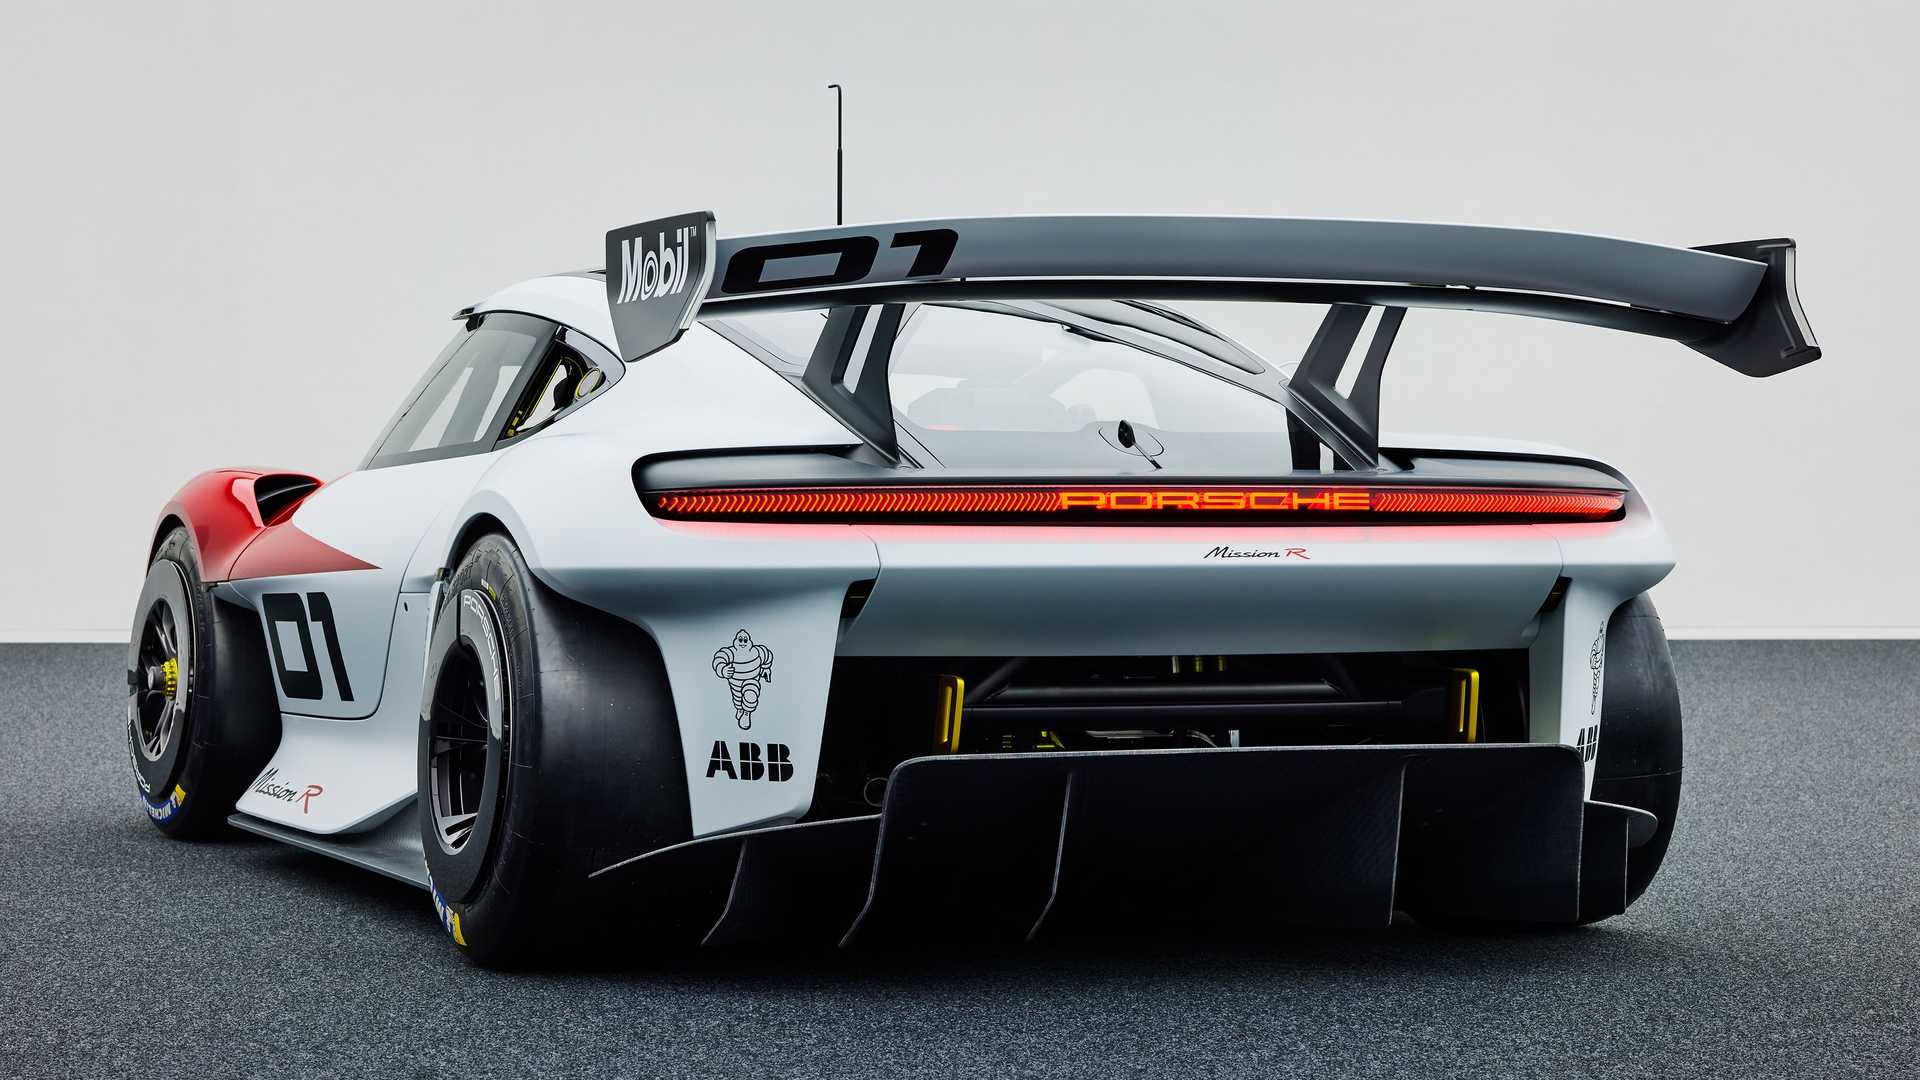 بال عقب خودروی الکتریکی مفهومی پورشه میشن آر / Porsche Mission R Concept EV